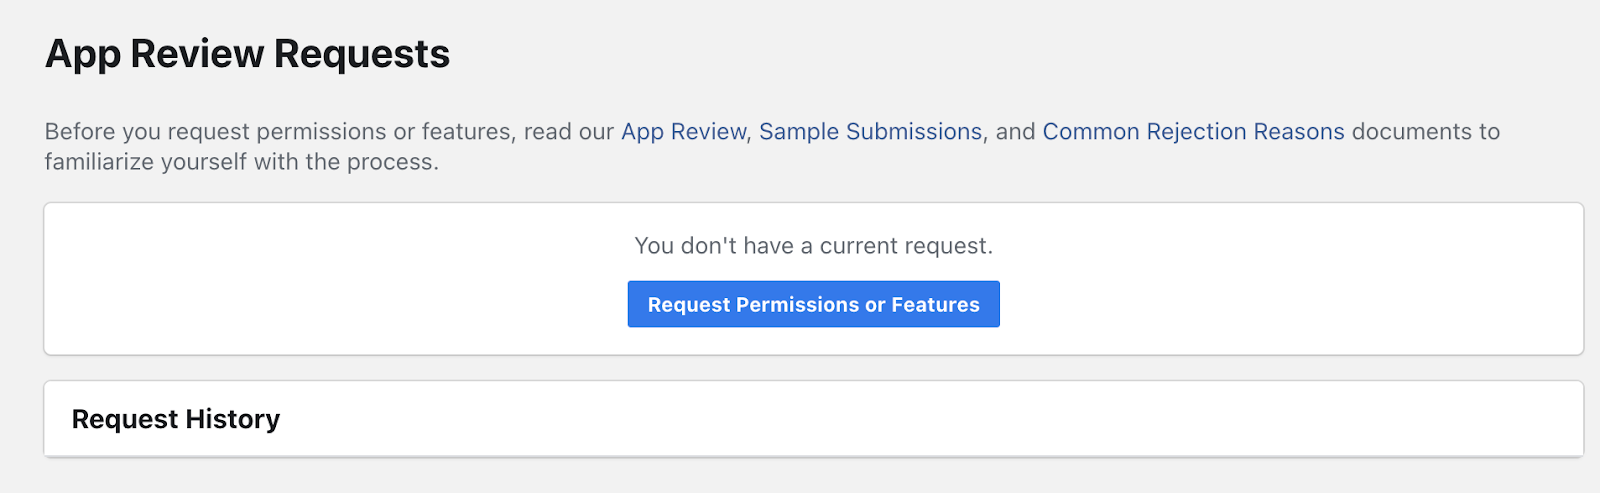 Facebook business verification app review request